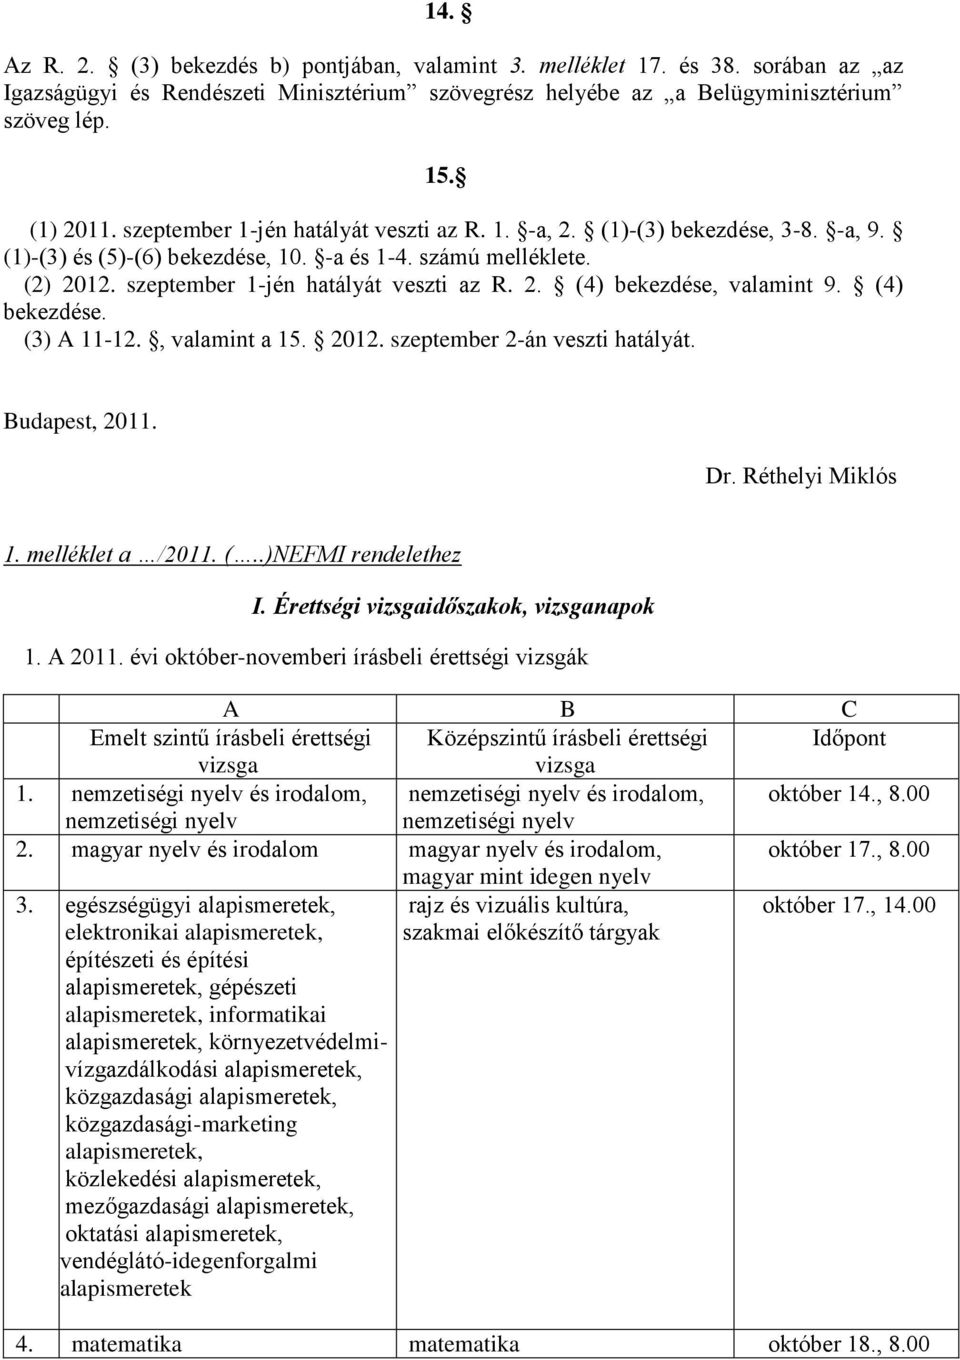 (4) bekezdése. (3) A 11-12., valamint a 15. 2012. szeptember 2-án veszti hatályát. Budapest, 2011. Dr. Réthelyi Miklós 1. melléklet a /2011. (..)NEFMI rendelethez I.